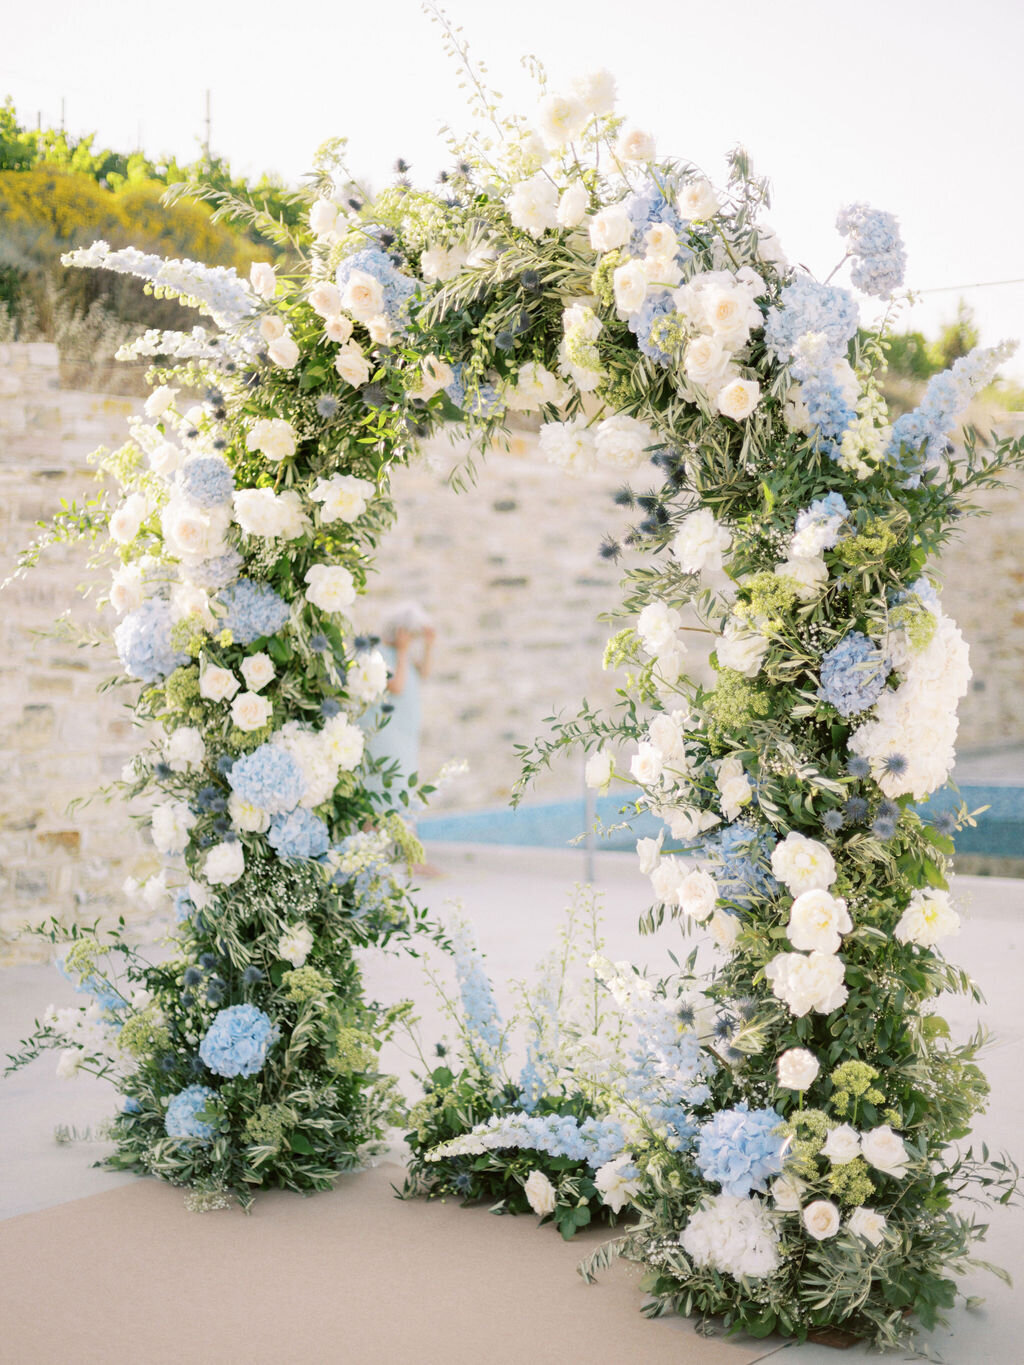 lefkara-dafermou-wedding-cyprus-wedding-planner-lebaneseD2-242-AKG-4574